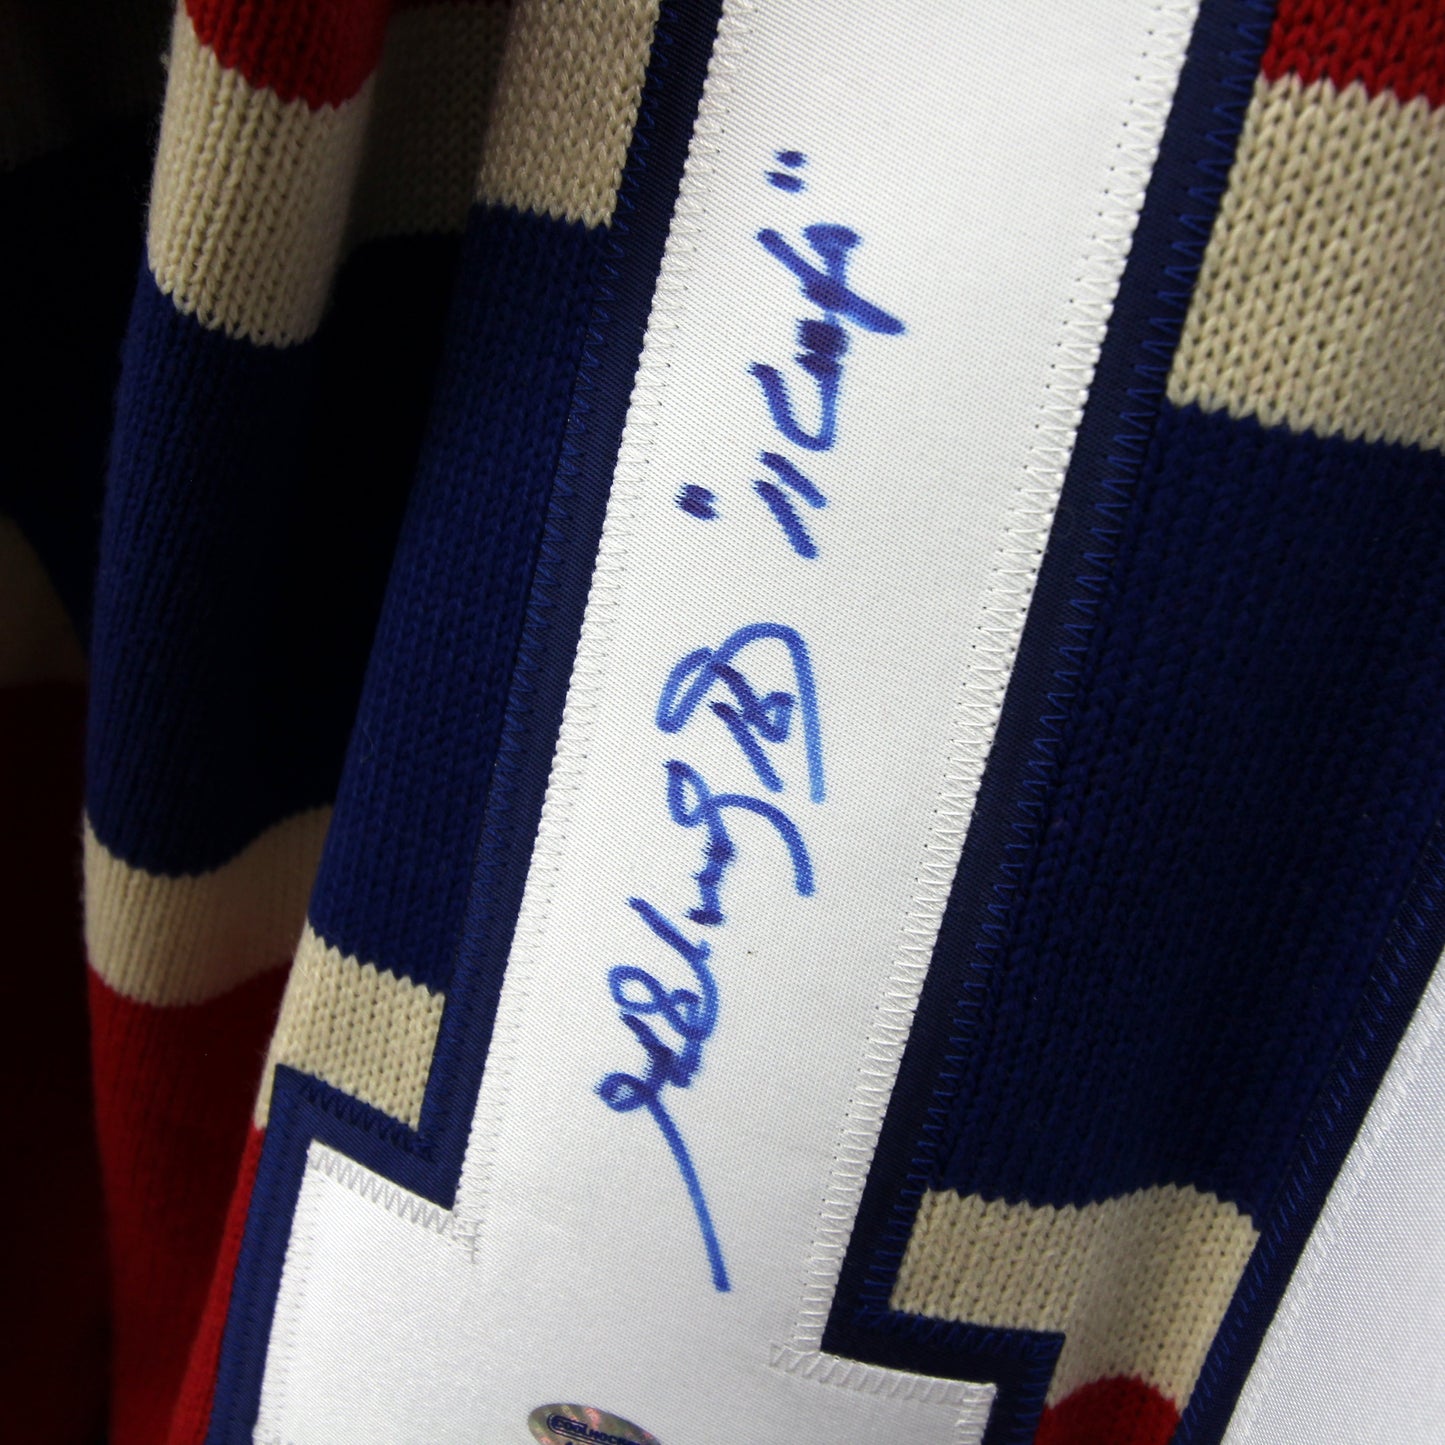 Henri Richard - Canadiens knitted / tricoté - Autographed Jersey / Chandail autographié